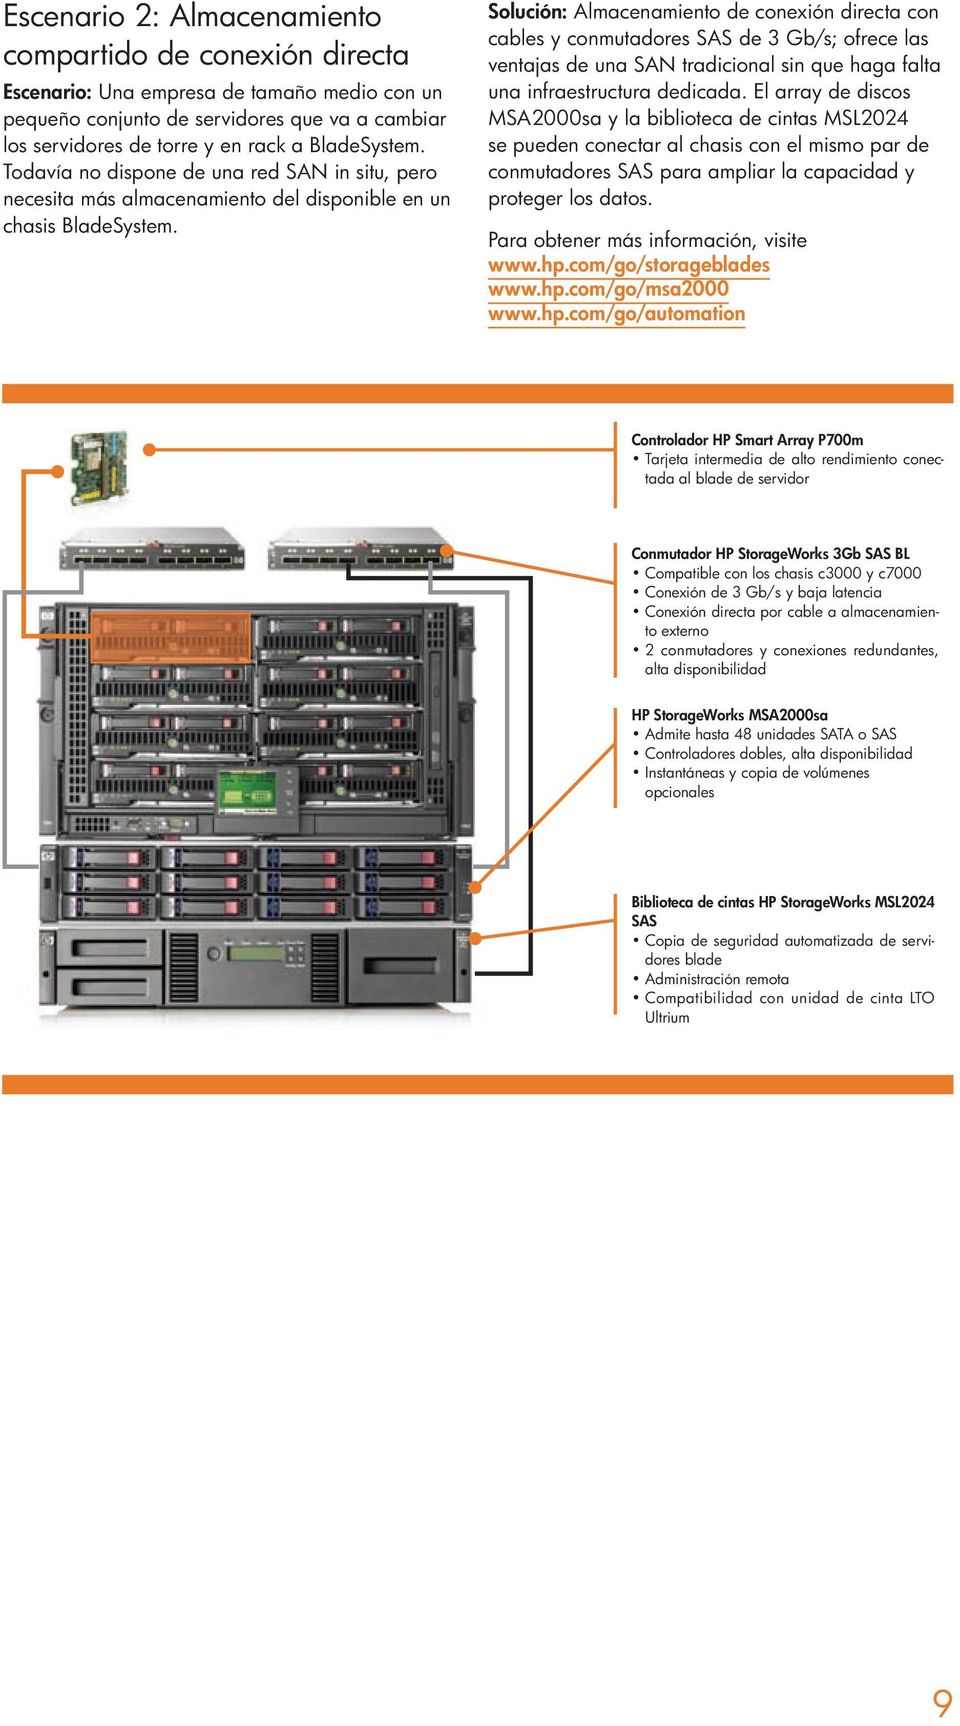 Solución: Almacenamiento de conexión directa con cables y conmutadores SAS de 3 Gb/s; ofrece las ventajas de una SAN tradicional sin que haga falta una infraestructura dedicada.